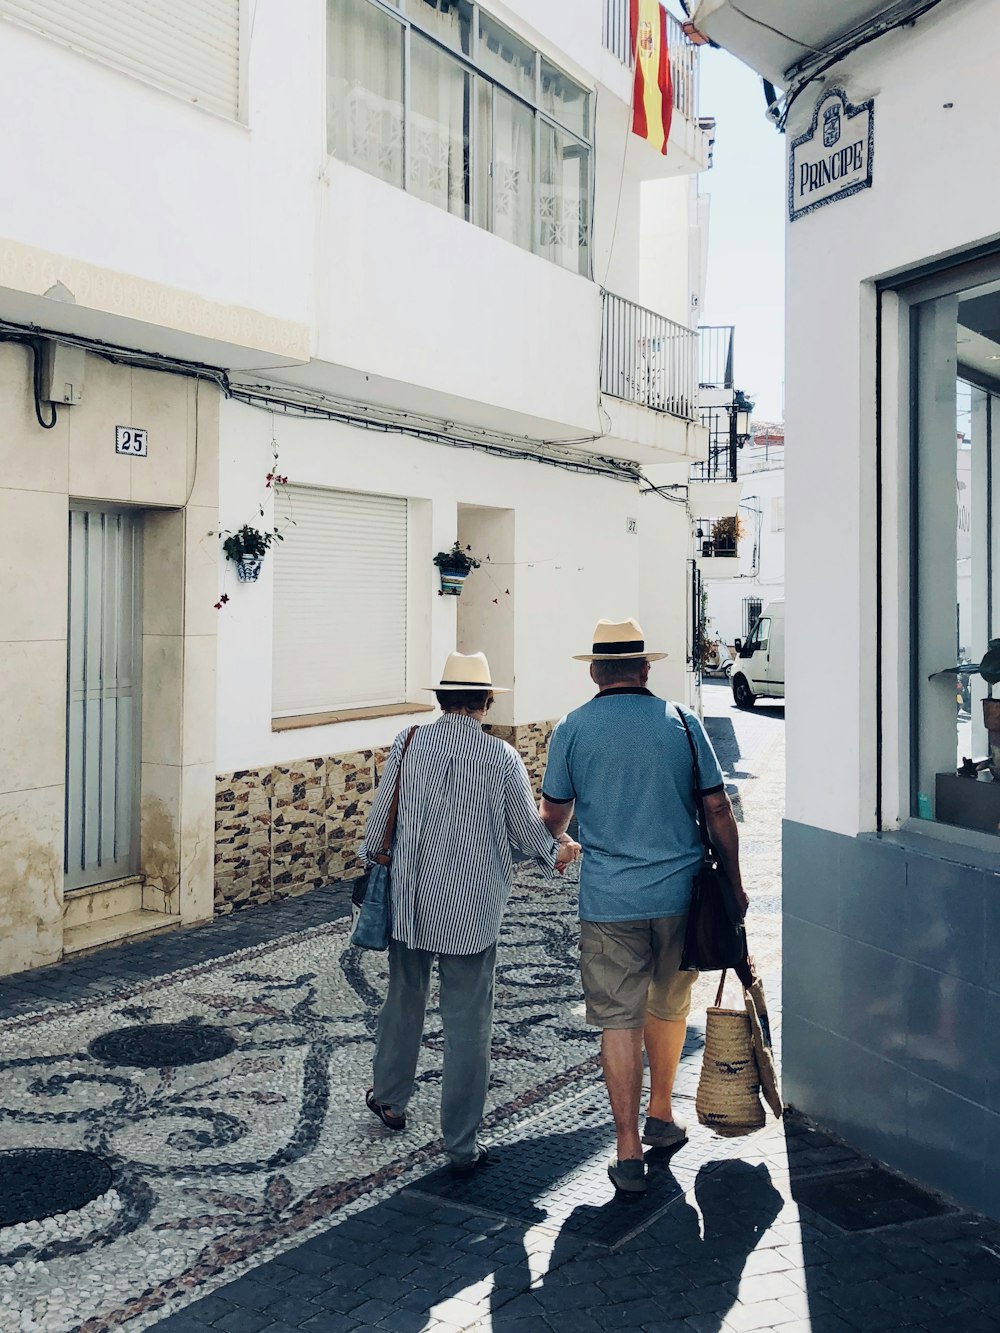 2 men walking on sidewalk during daytime